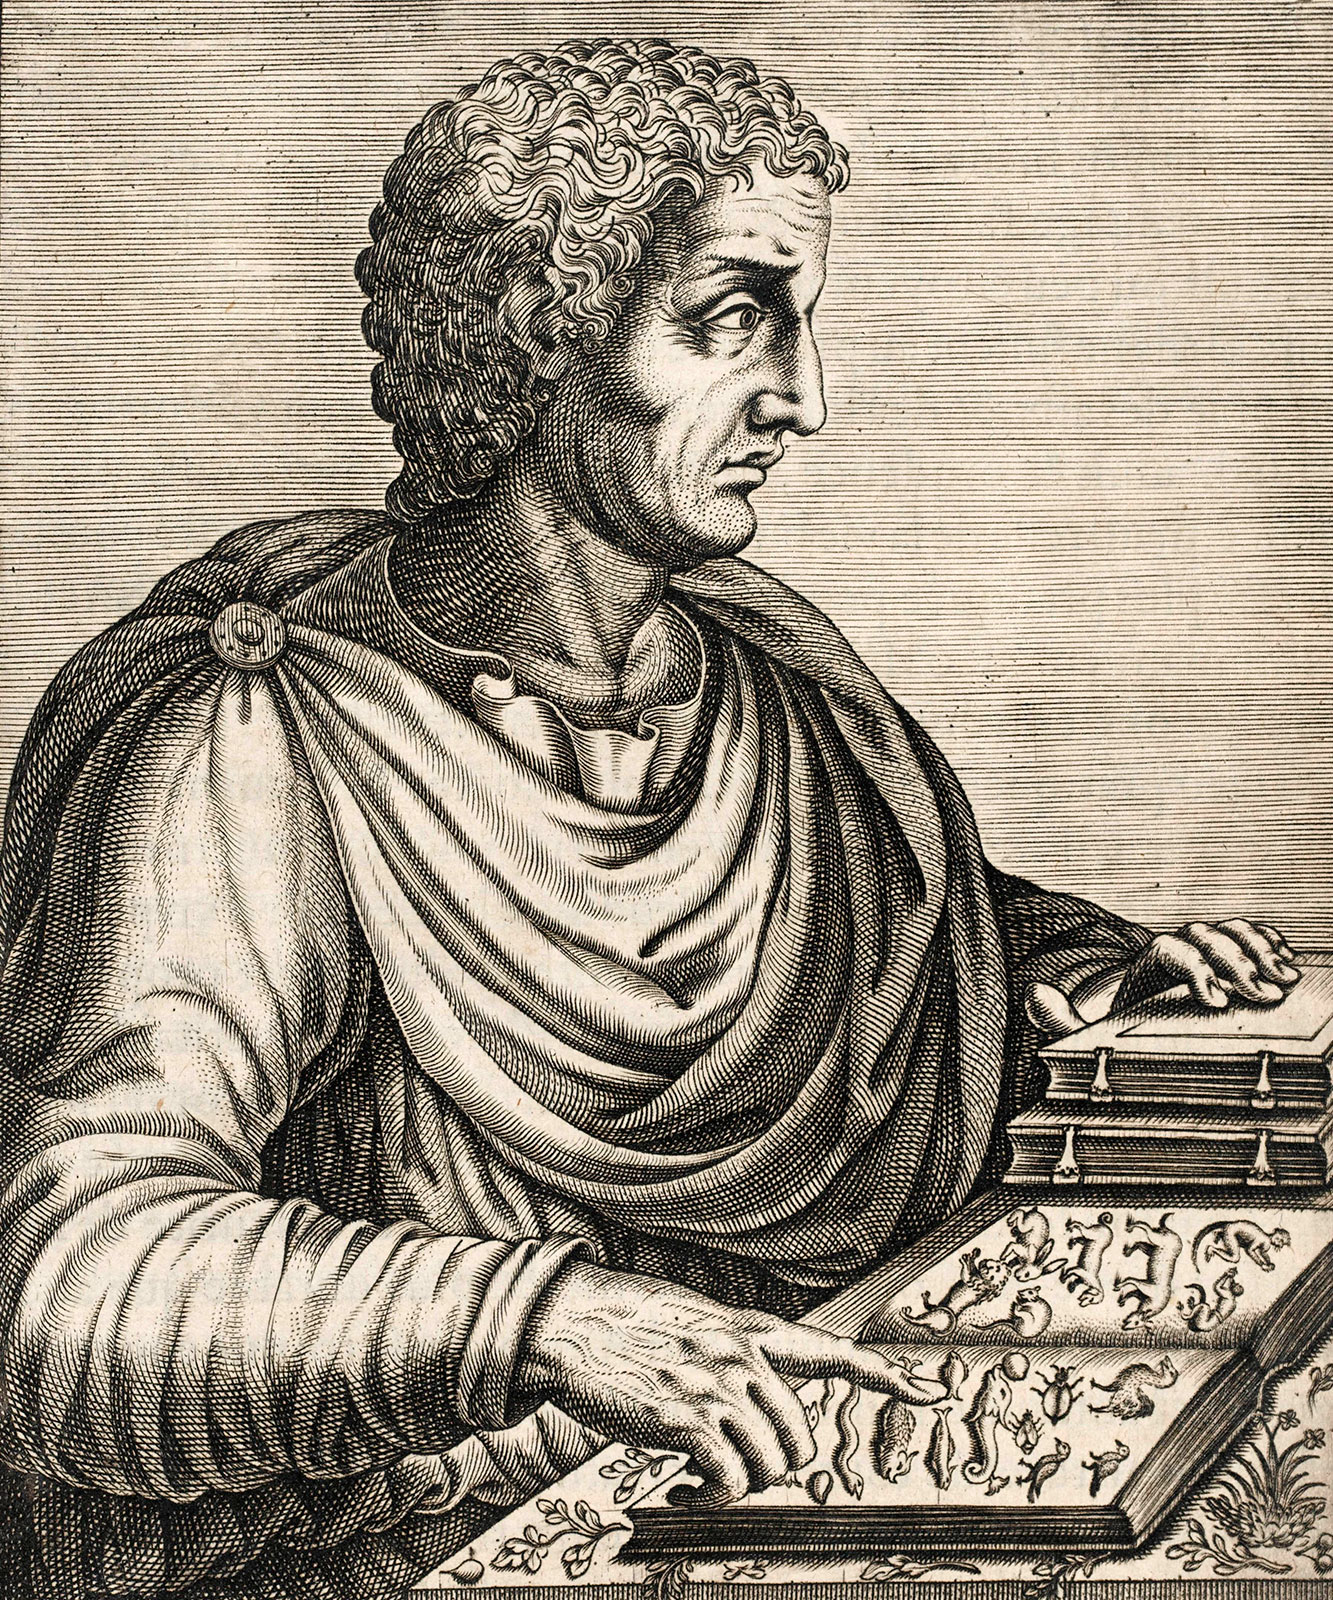 Pliny